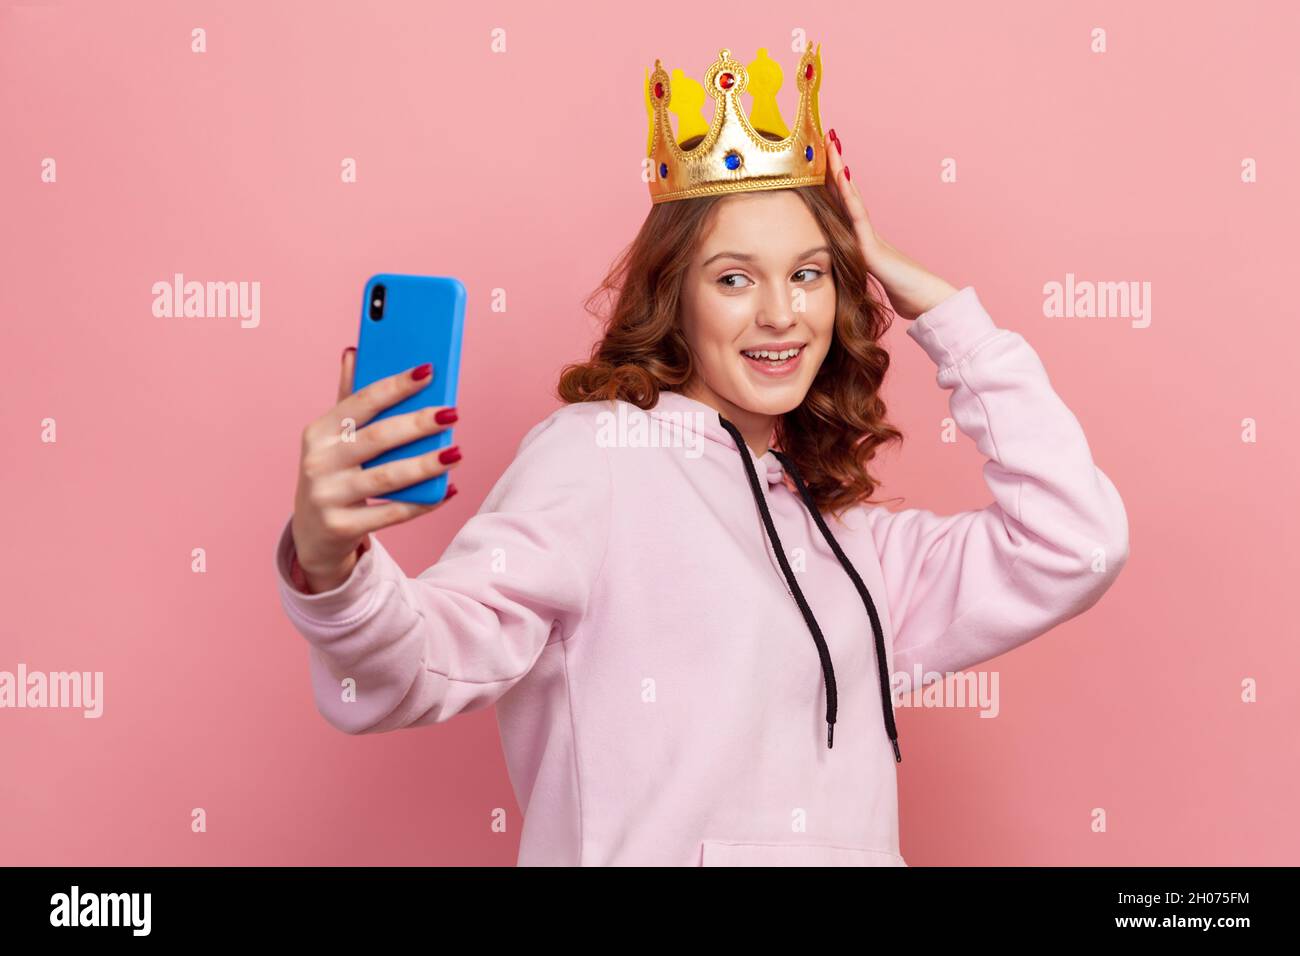 Retrato de una chica adolescente sonriente de pelo rizado con capucha y corona dorada posando en la cámara del smartphone, tomando selfie. Estudio en interior grabado aislado sobre fondo rosa Foto de stock